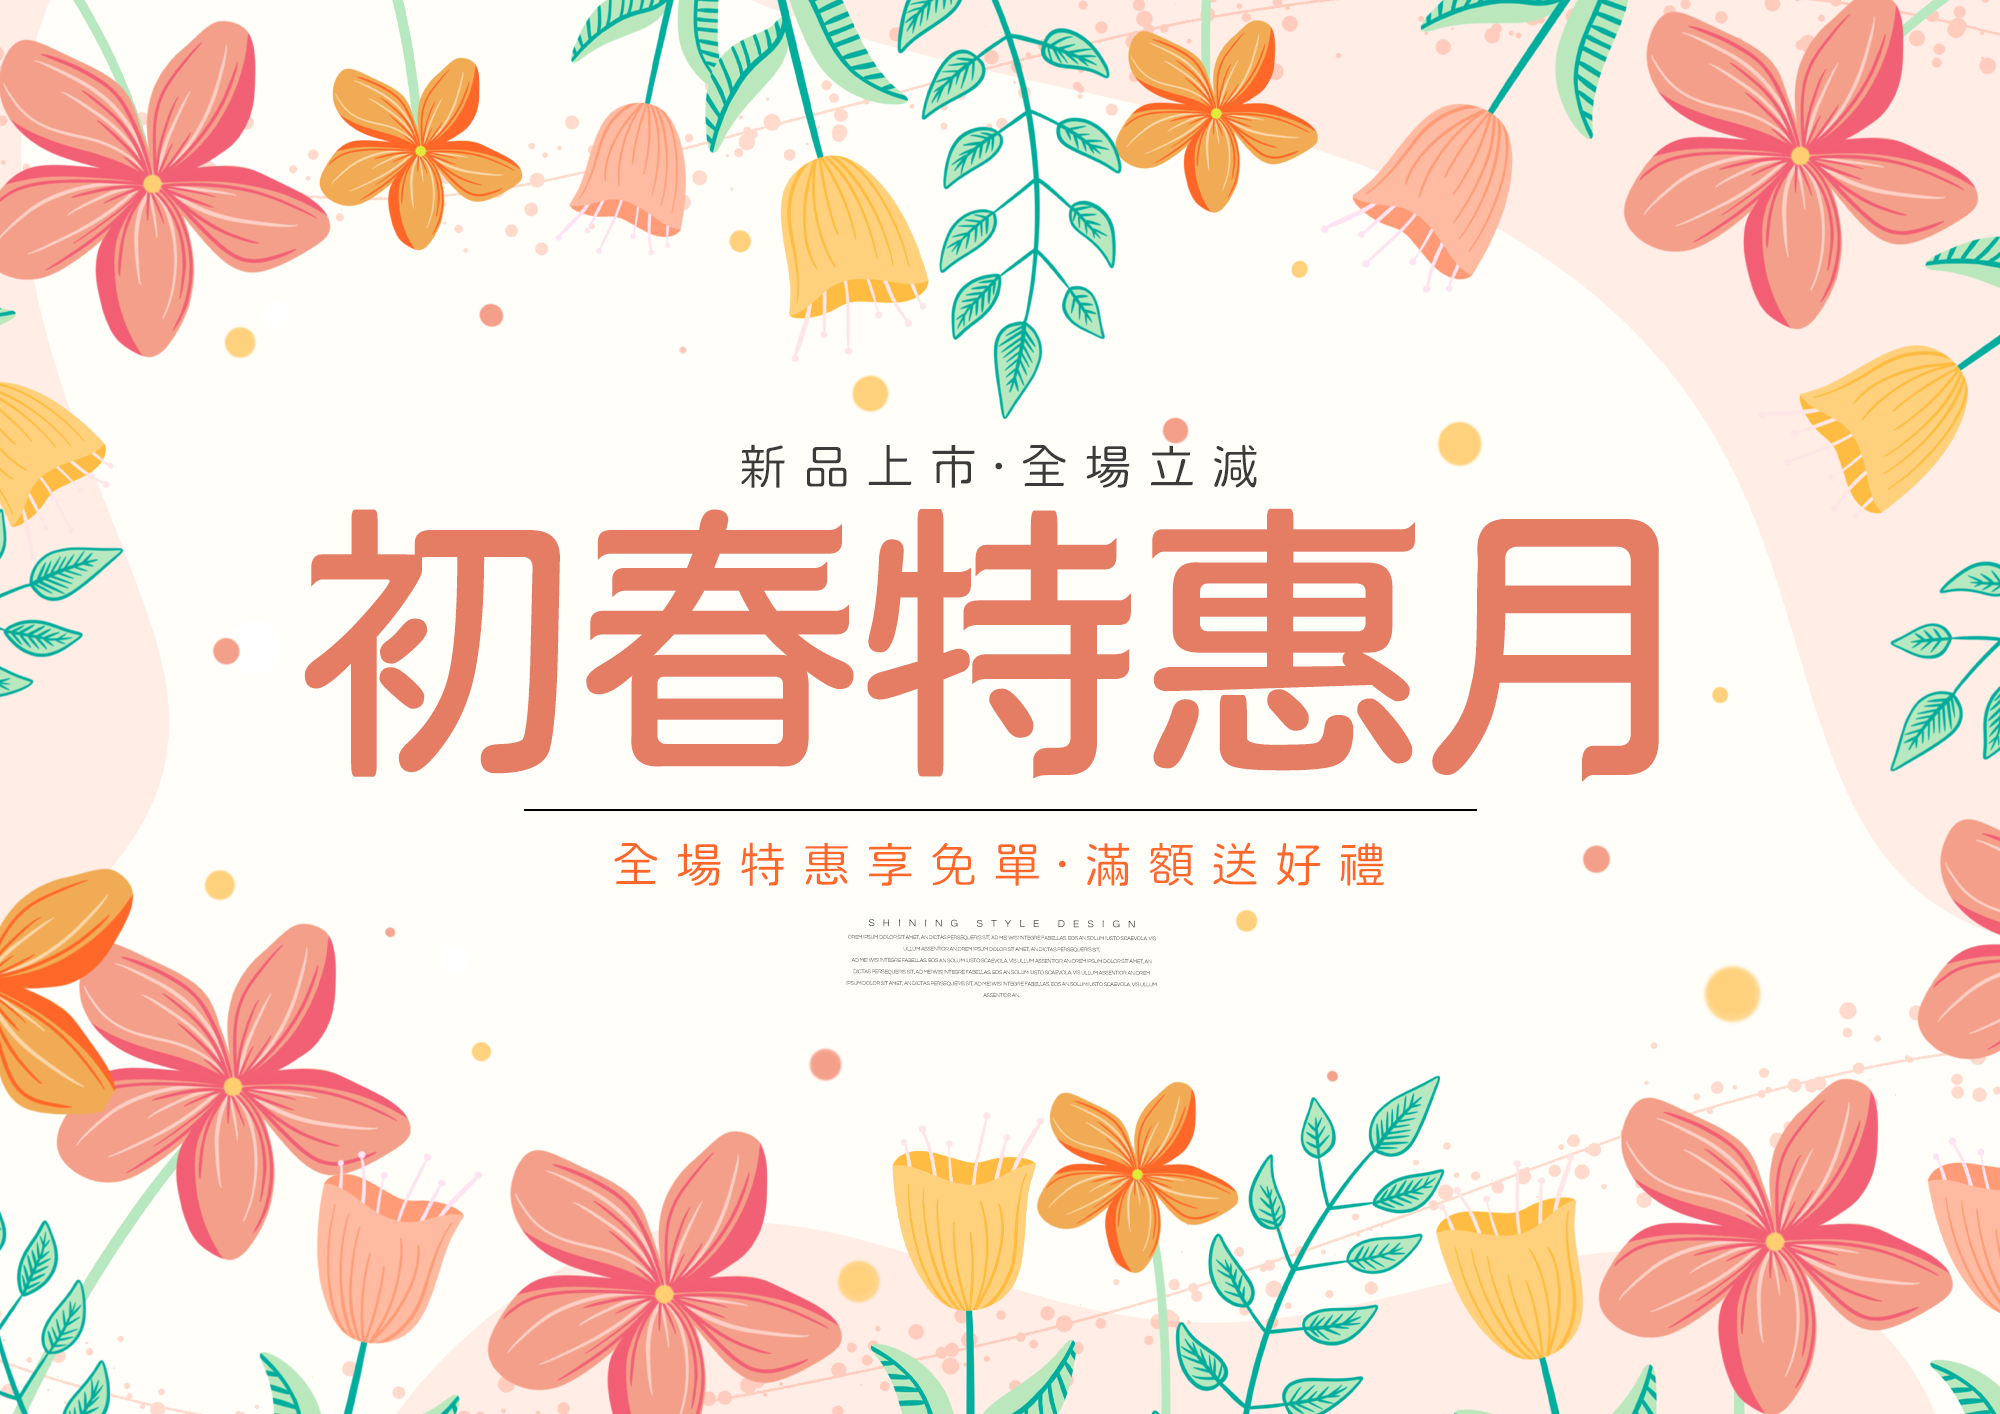 卡通可爱叶子植物花卉线条初春特惠月春季宣传促销海报图片